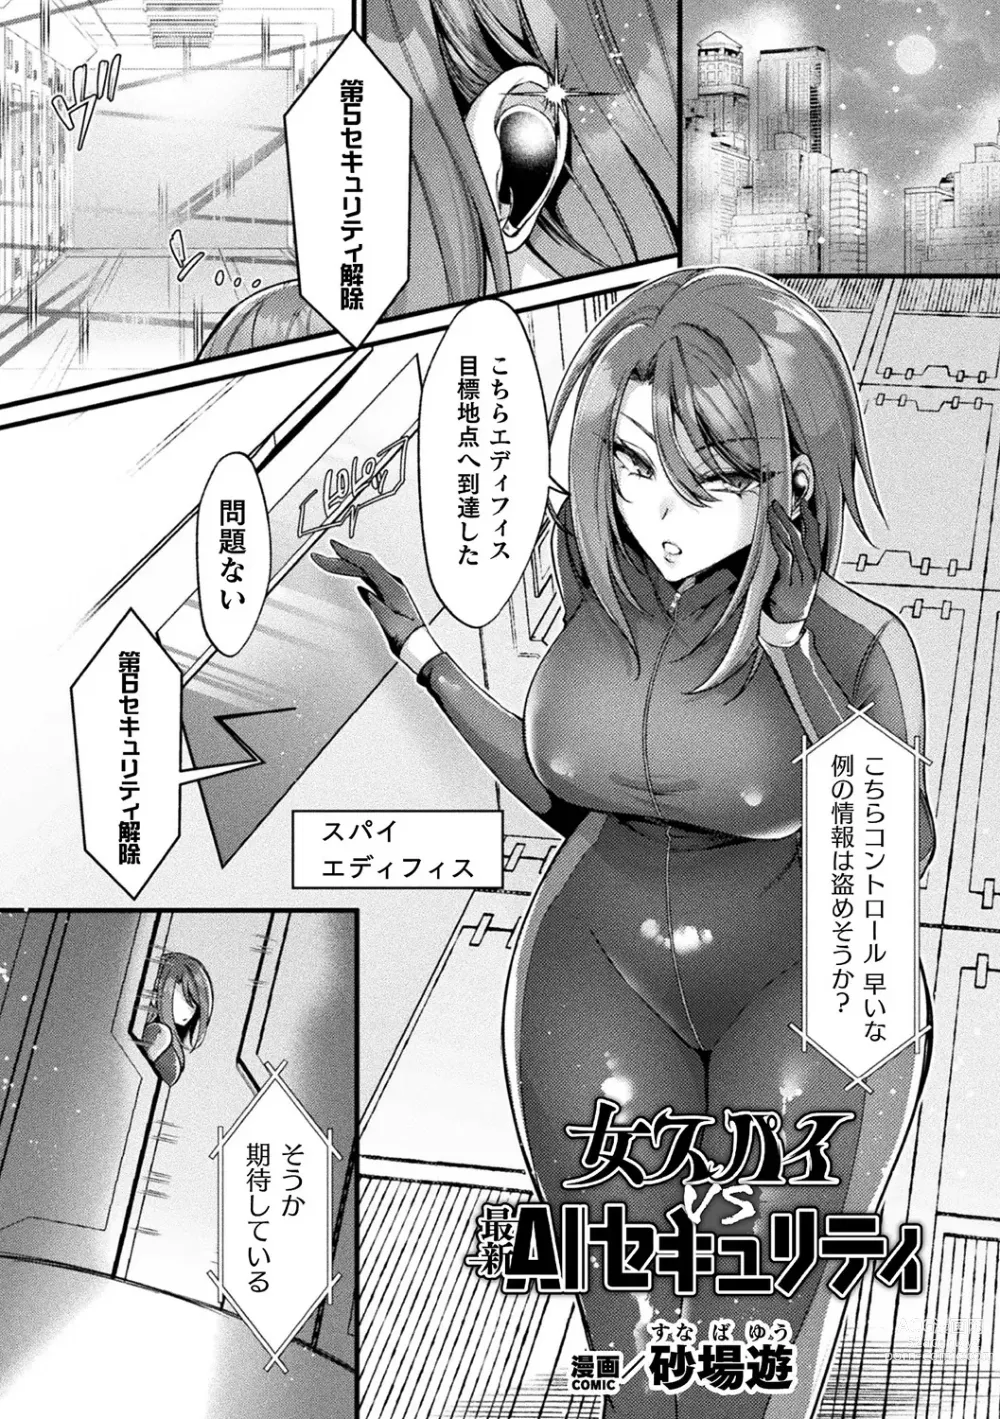 Page 5 of manga Bessatsu Comic Unreal AI ni Wakaraserareru Jinrui Hen Vol. 1